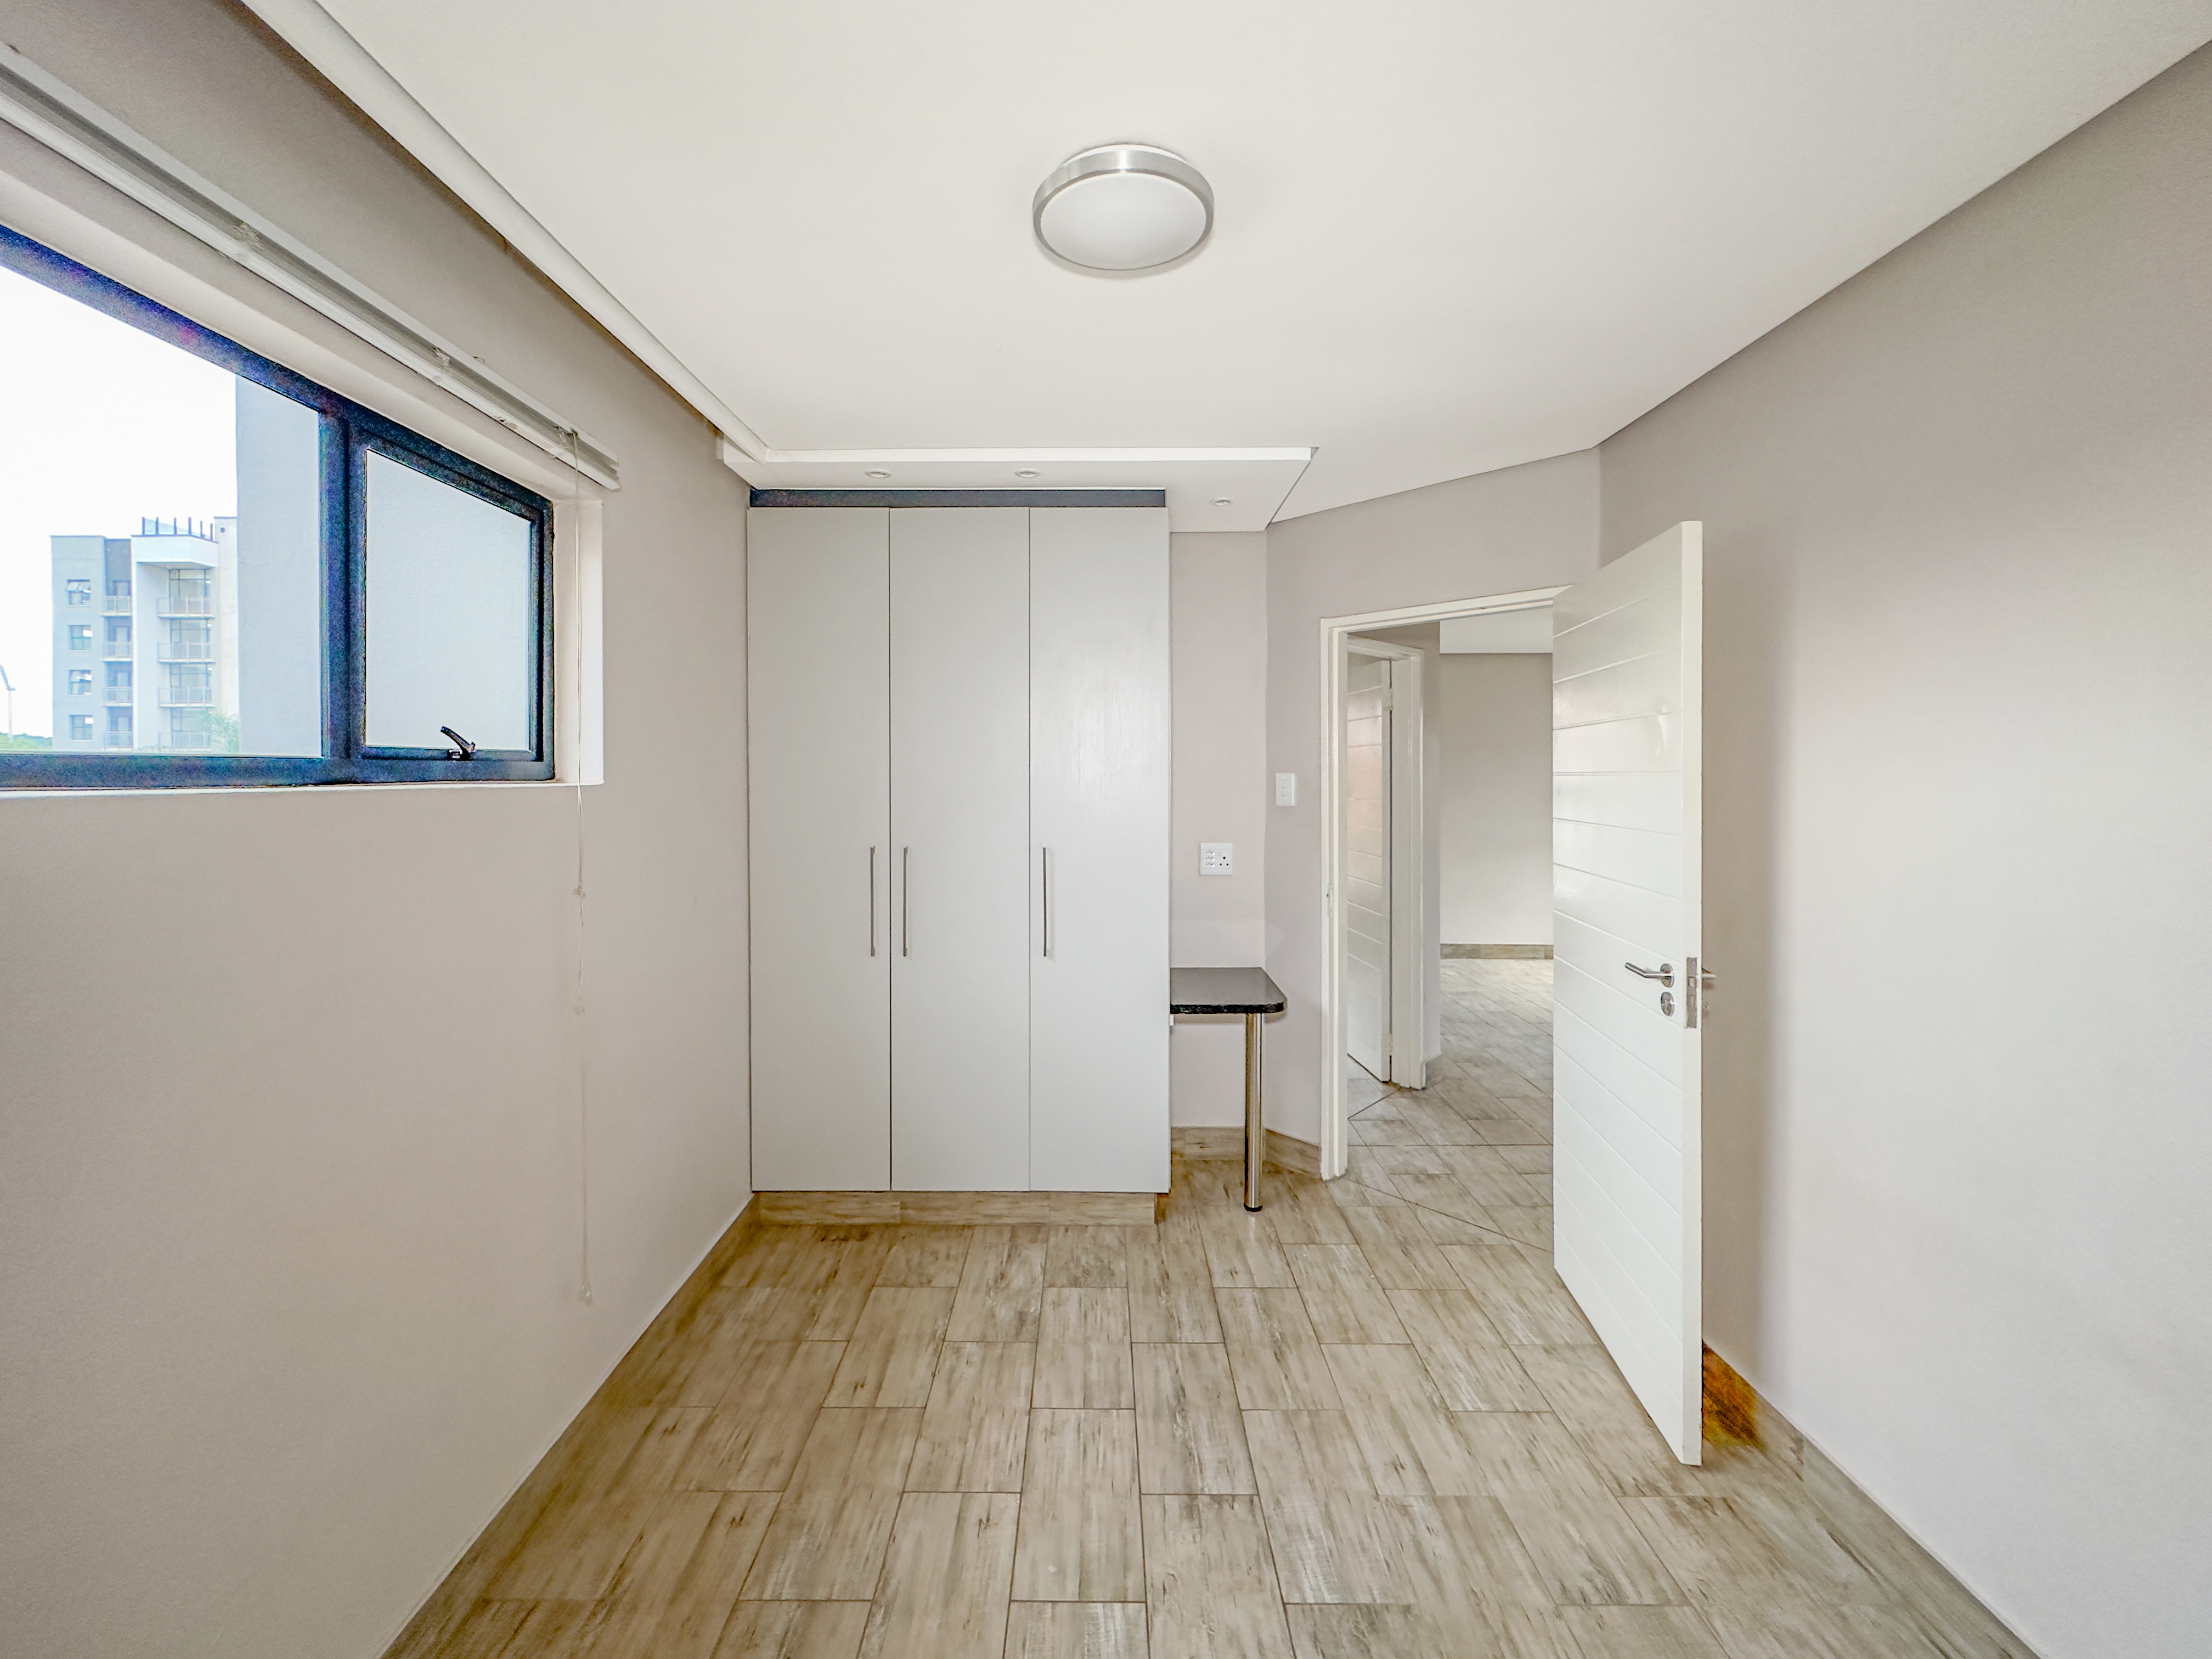 To Let 2 Bedroom Property for Rent in Hatfield Gauteng